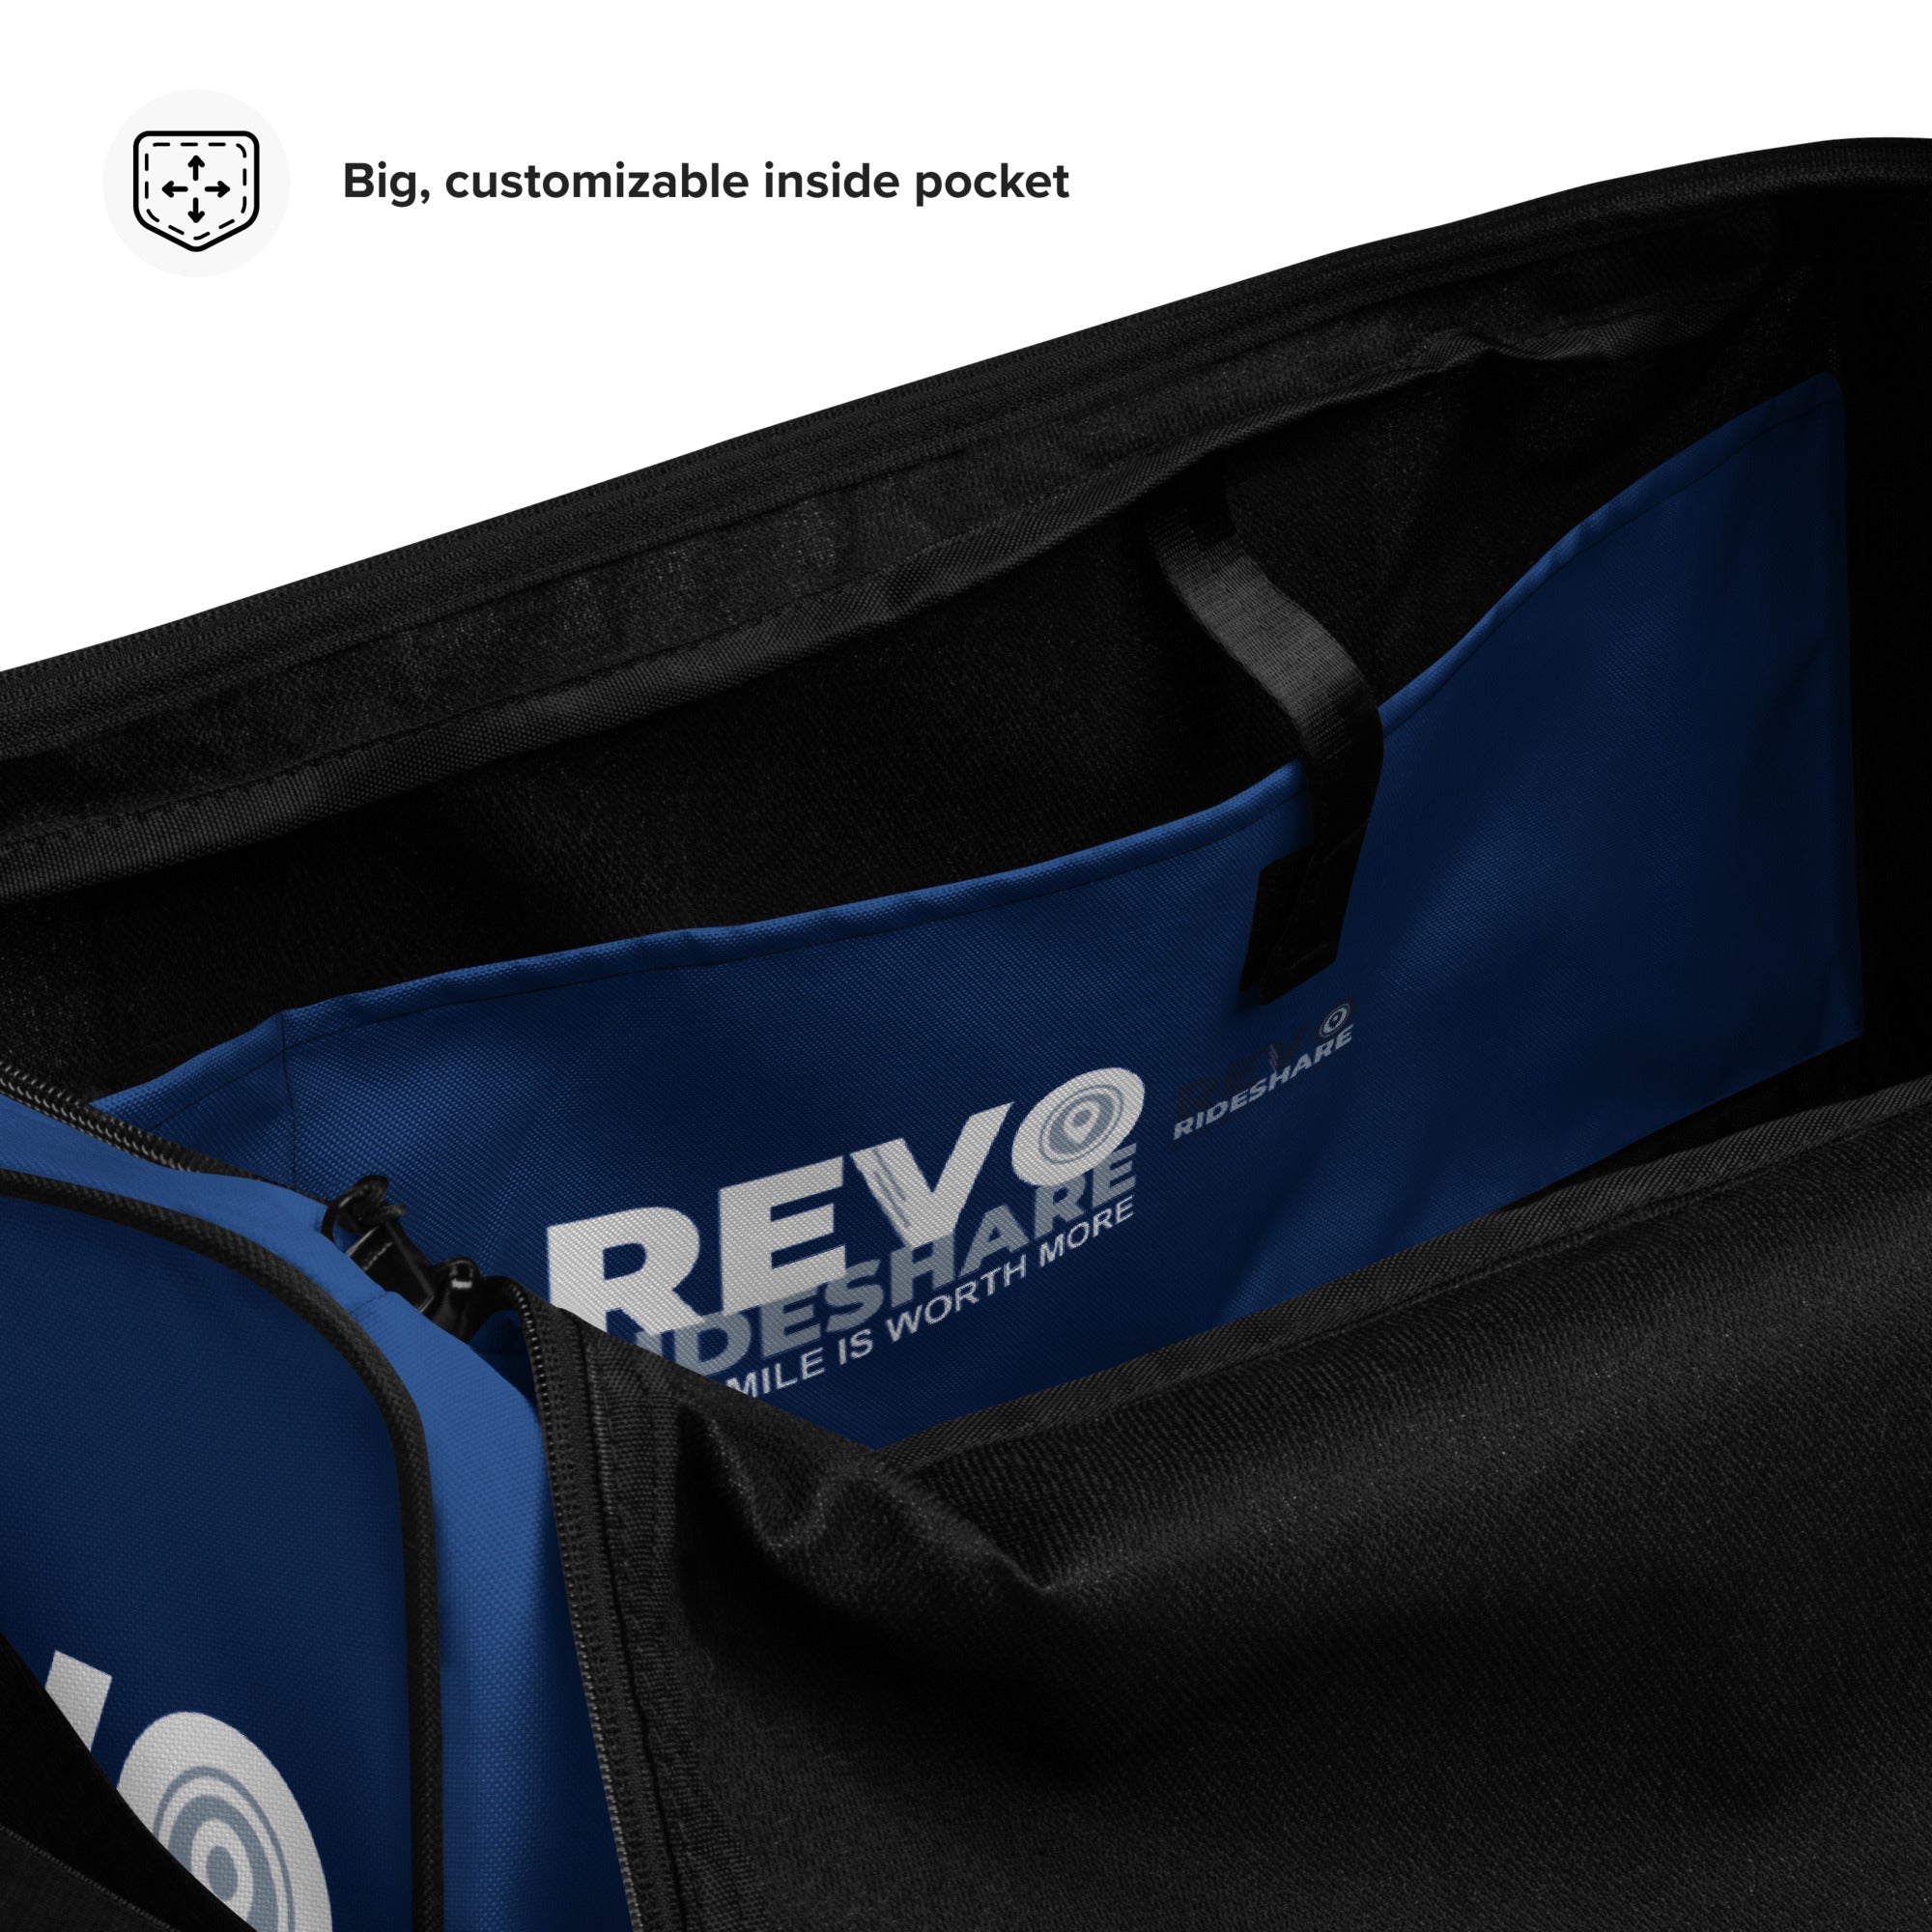 REVO Rideshare Duffle bag